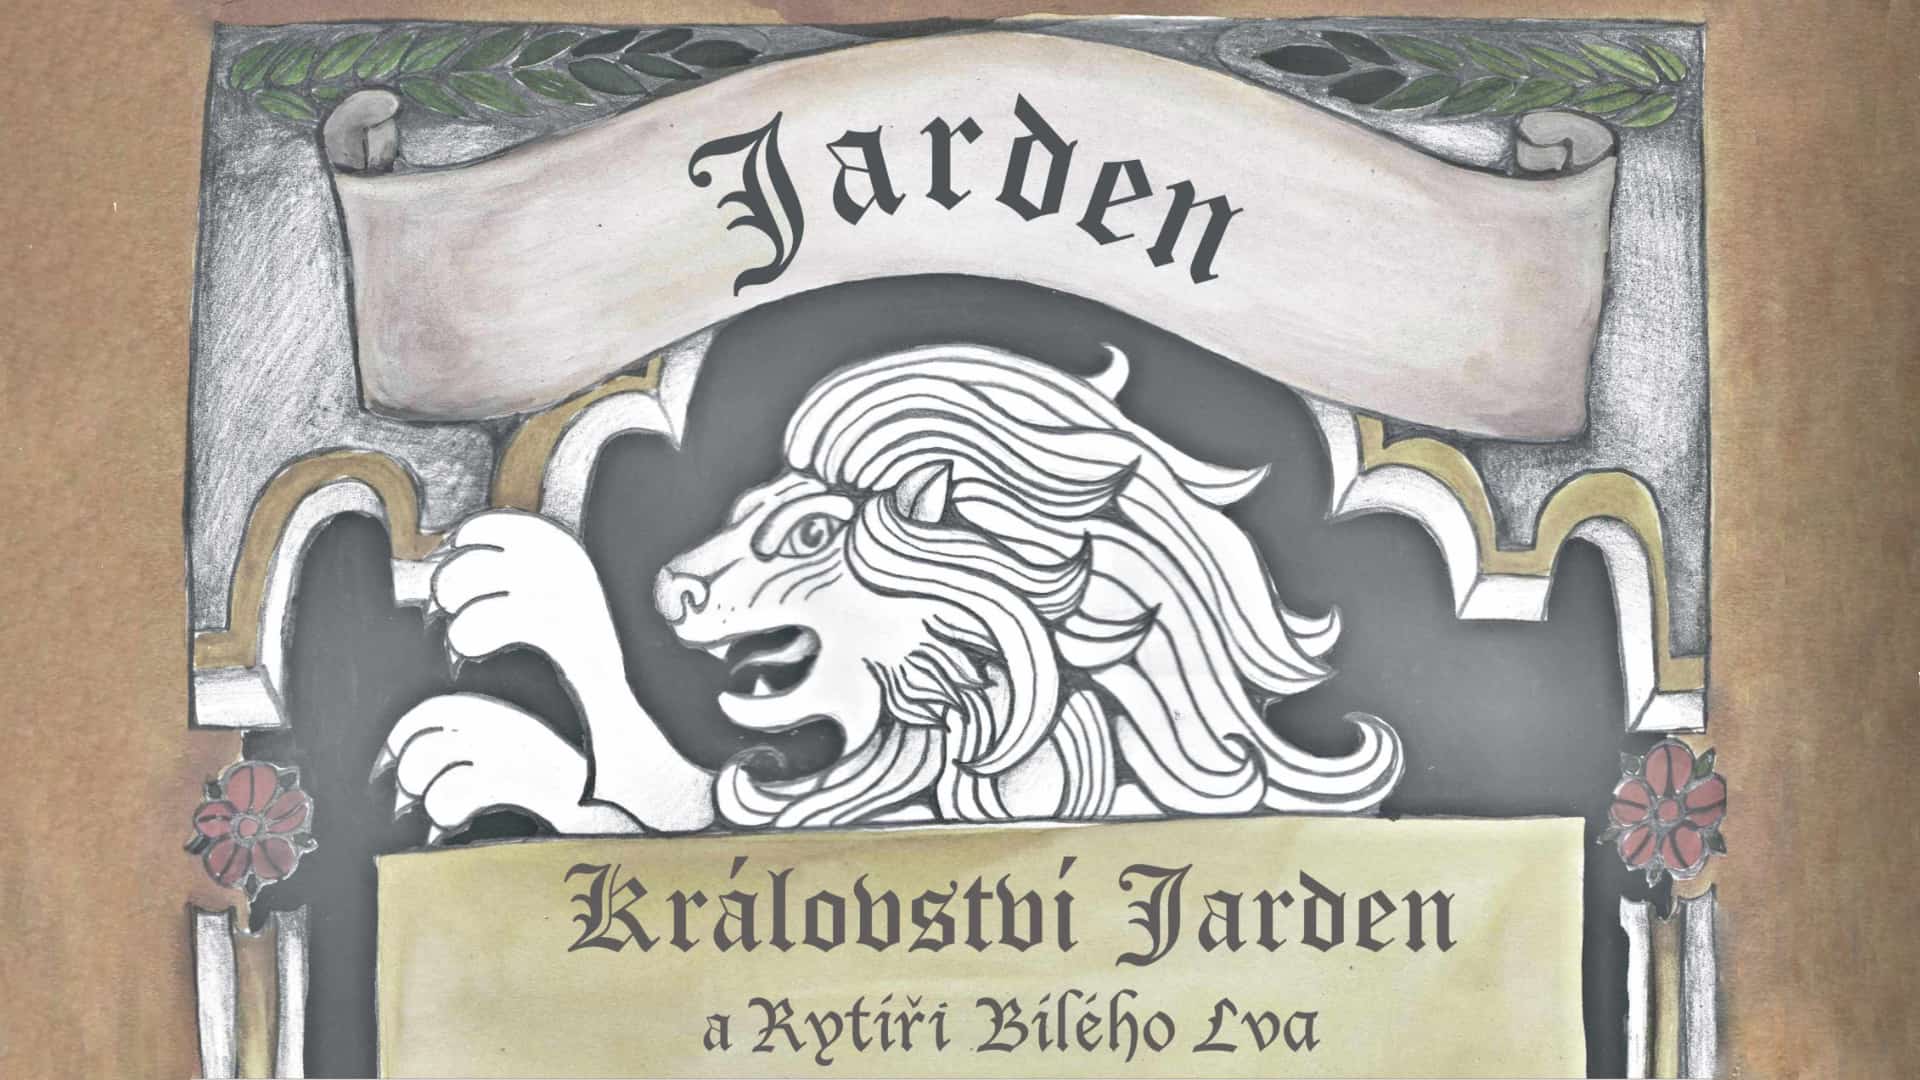 Království Jarden a rytíři Bílého lva 1